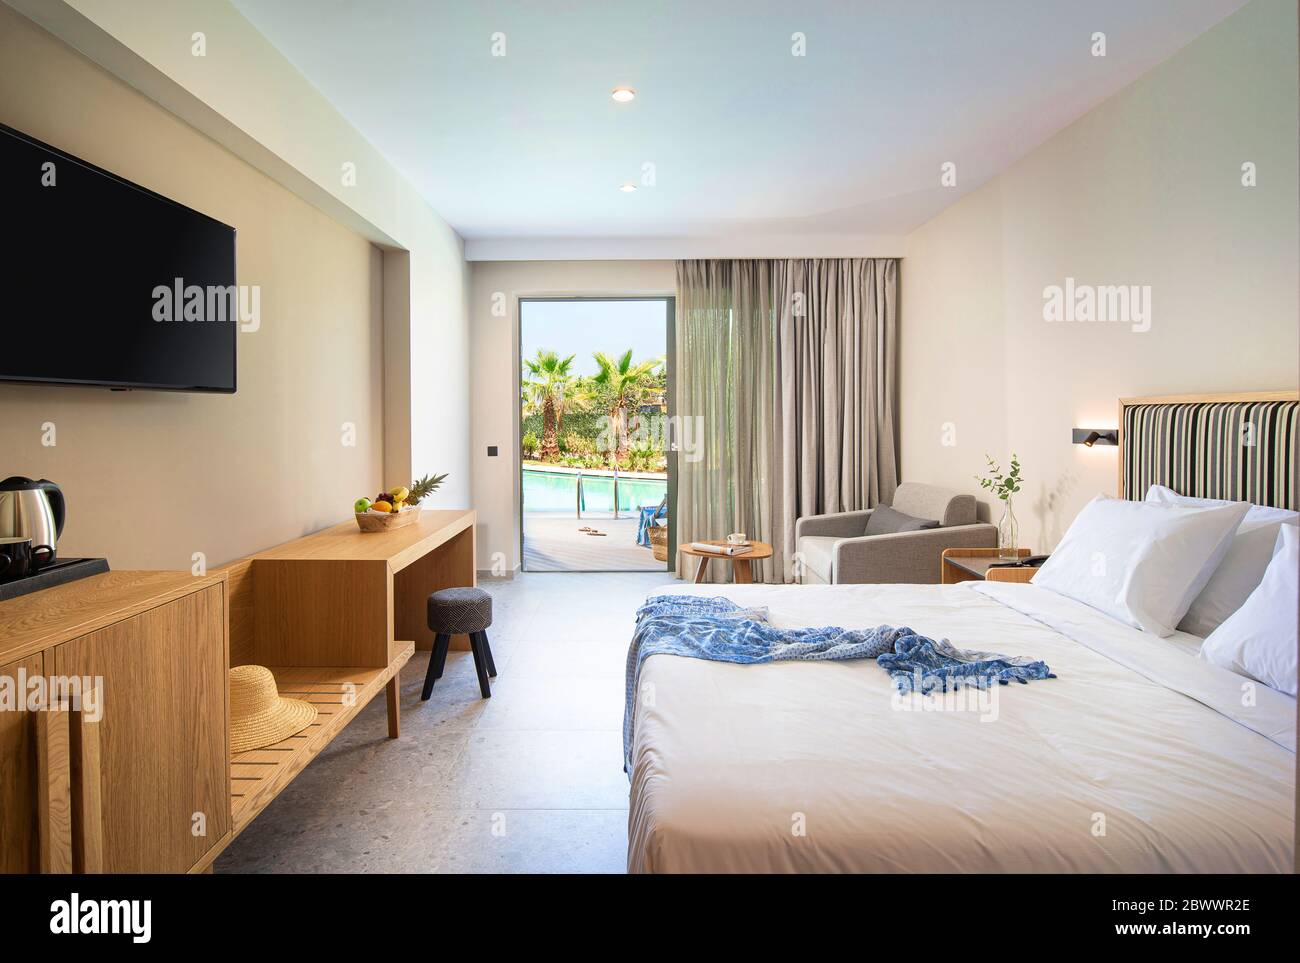 Interni in legno chiaro e a strisce beige di stile moderno minimalista con finestra a vista e piscina tropicale Foto Stock